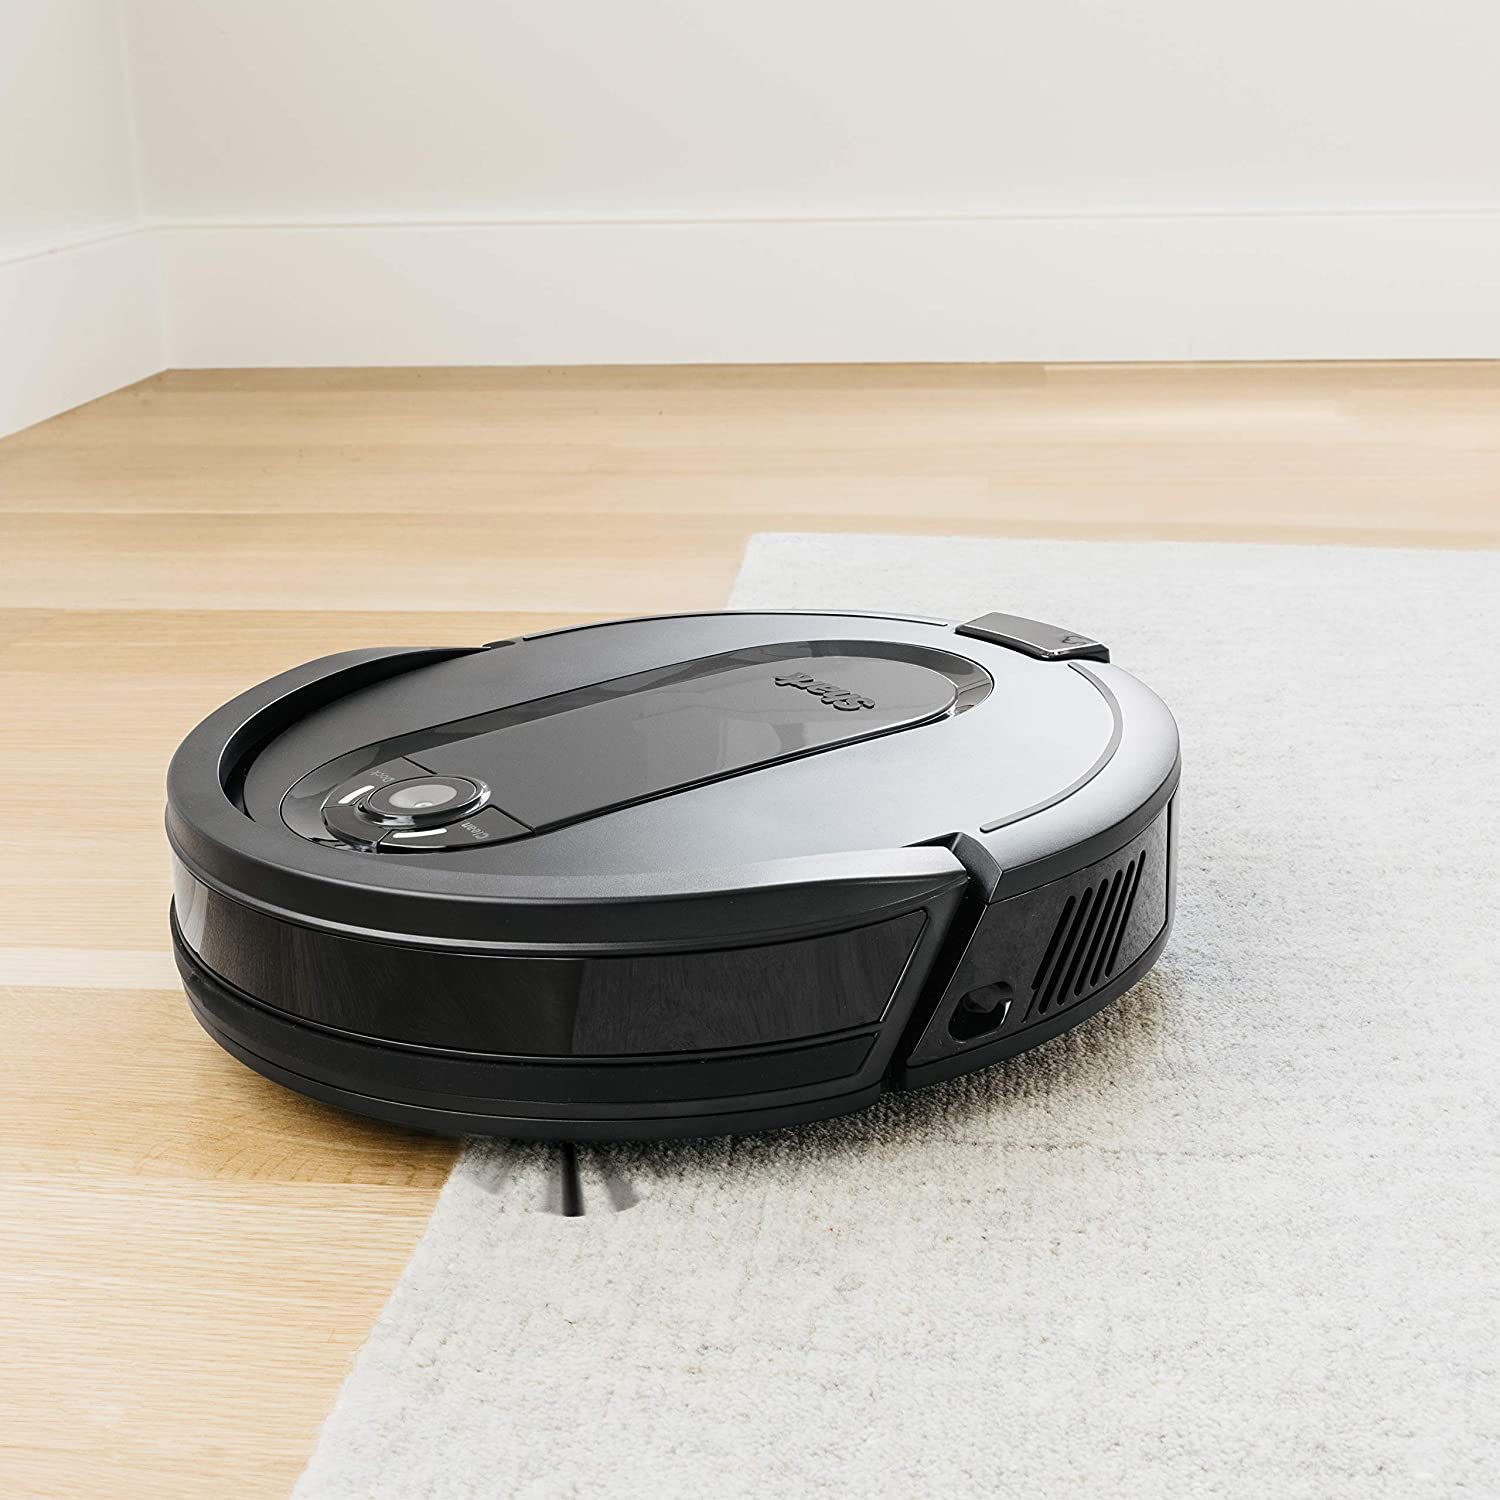 Roborock Auto Charging Pet Robotic Vacuum and Mop Self Emptying in